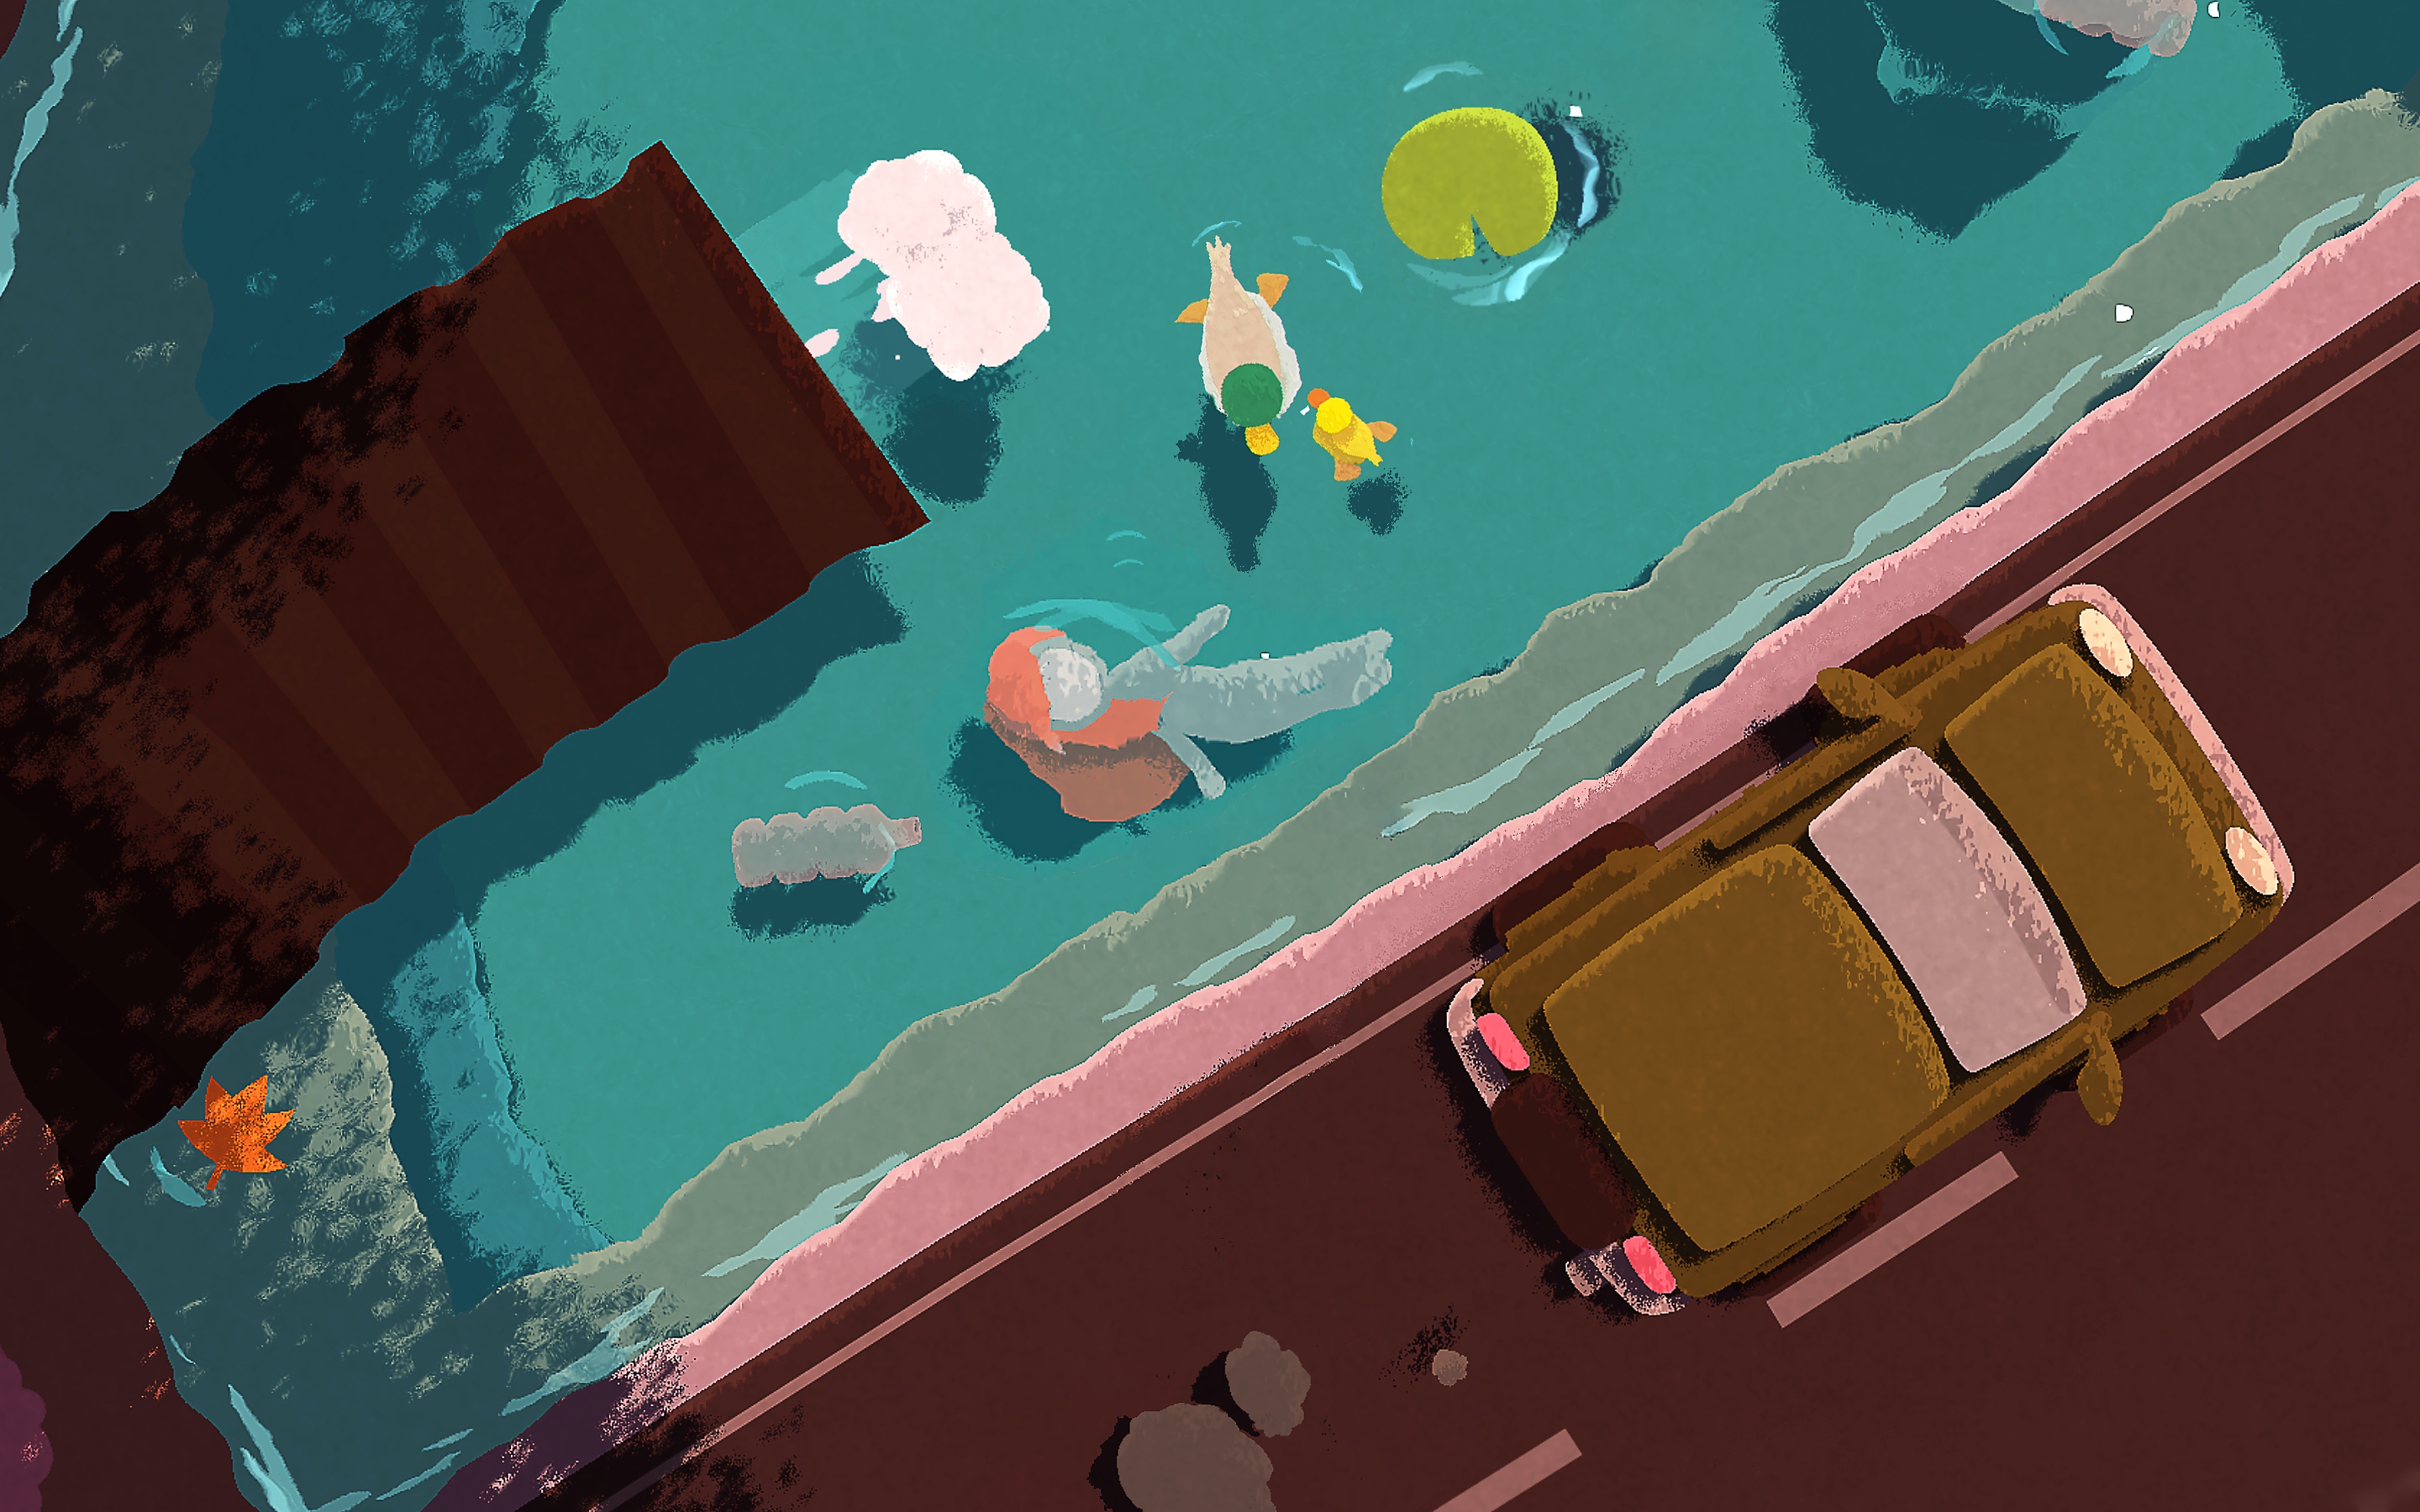 لقطة شاشة من لعبة Naiad تظهر فيها شخصية تسبح في أعماق النهر تحت جسر تسير عليه سيارات